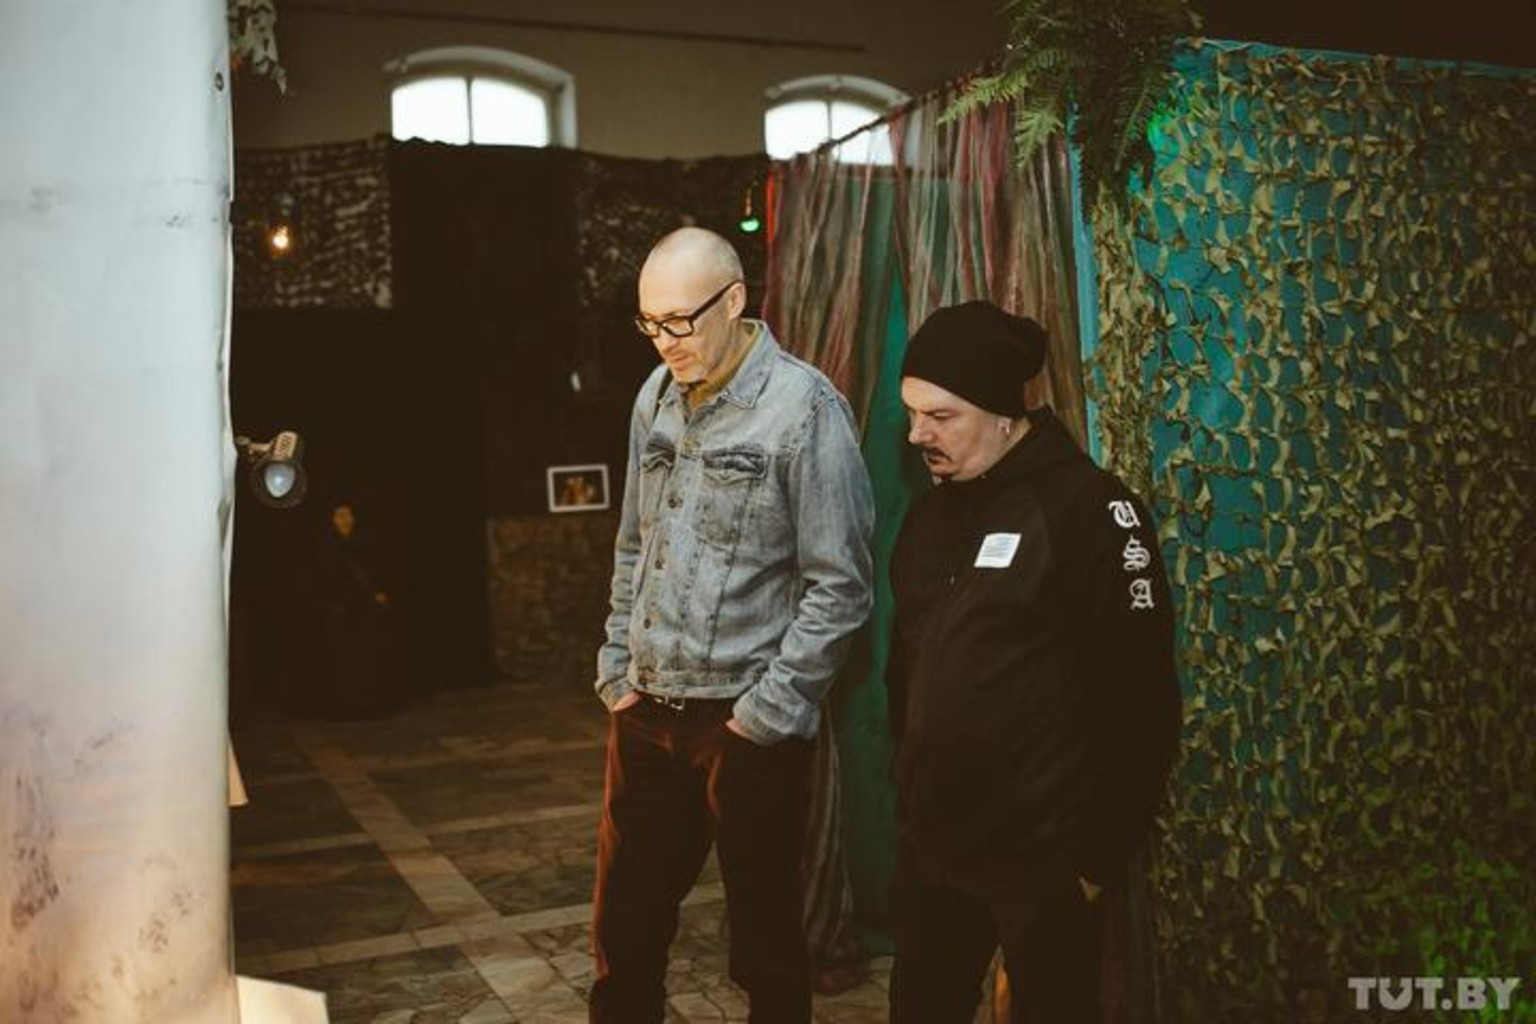 Павел Булатников и Евгений Калмыков перед презентацией сингла группы Trubetskoy в Минске, 22 декабря 2015 года. Фото: TUT.BY